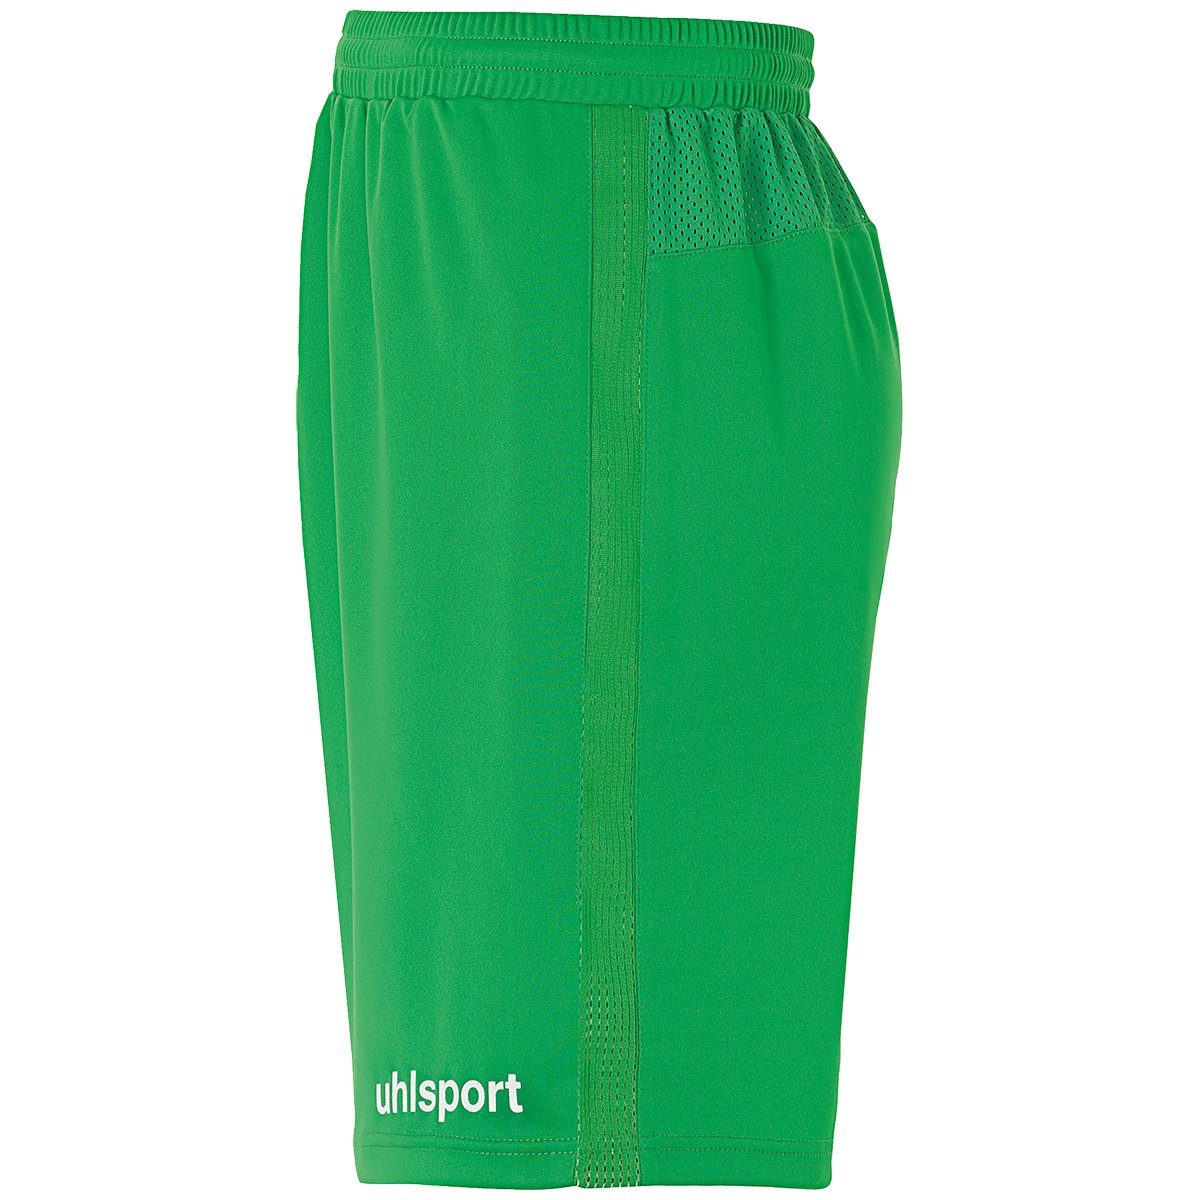 SHORTS grün/weiß uhlsport Shorts uhlsport Shorts PERFORMANCE